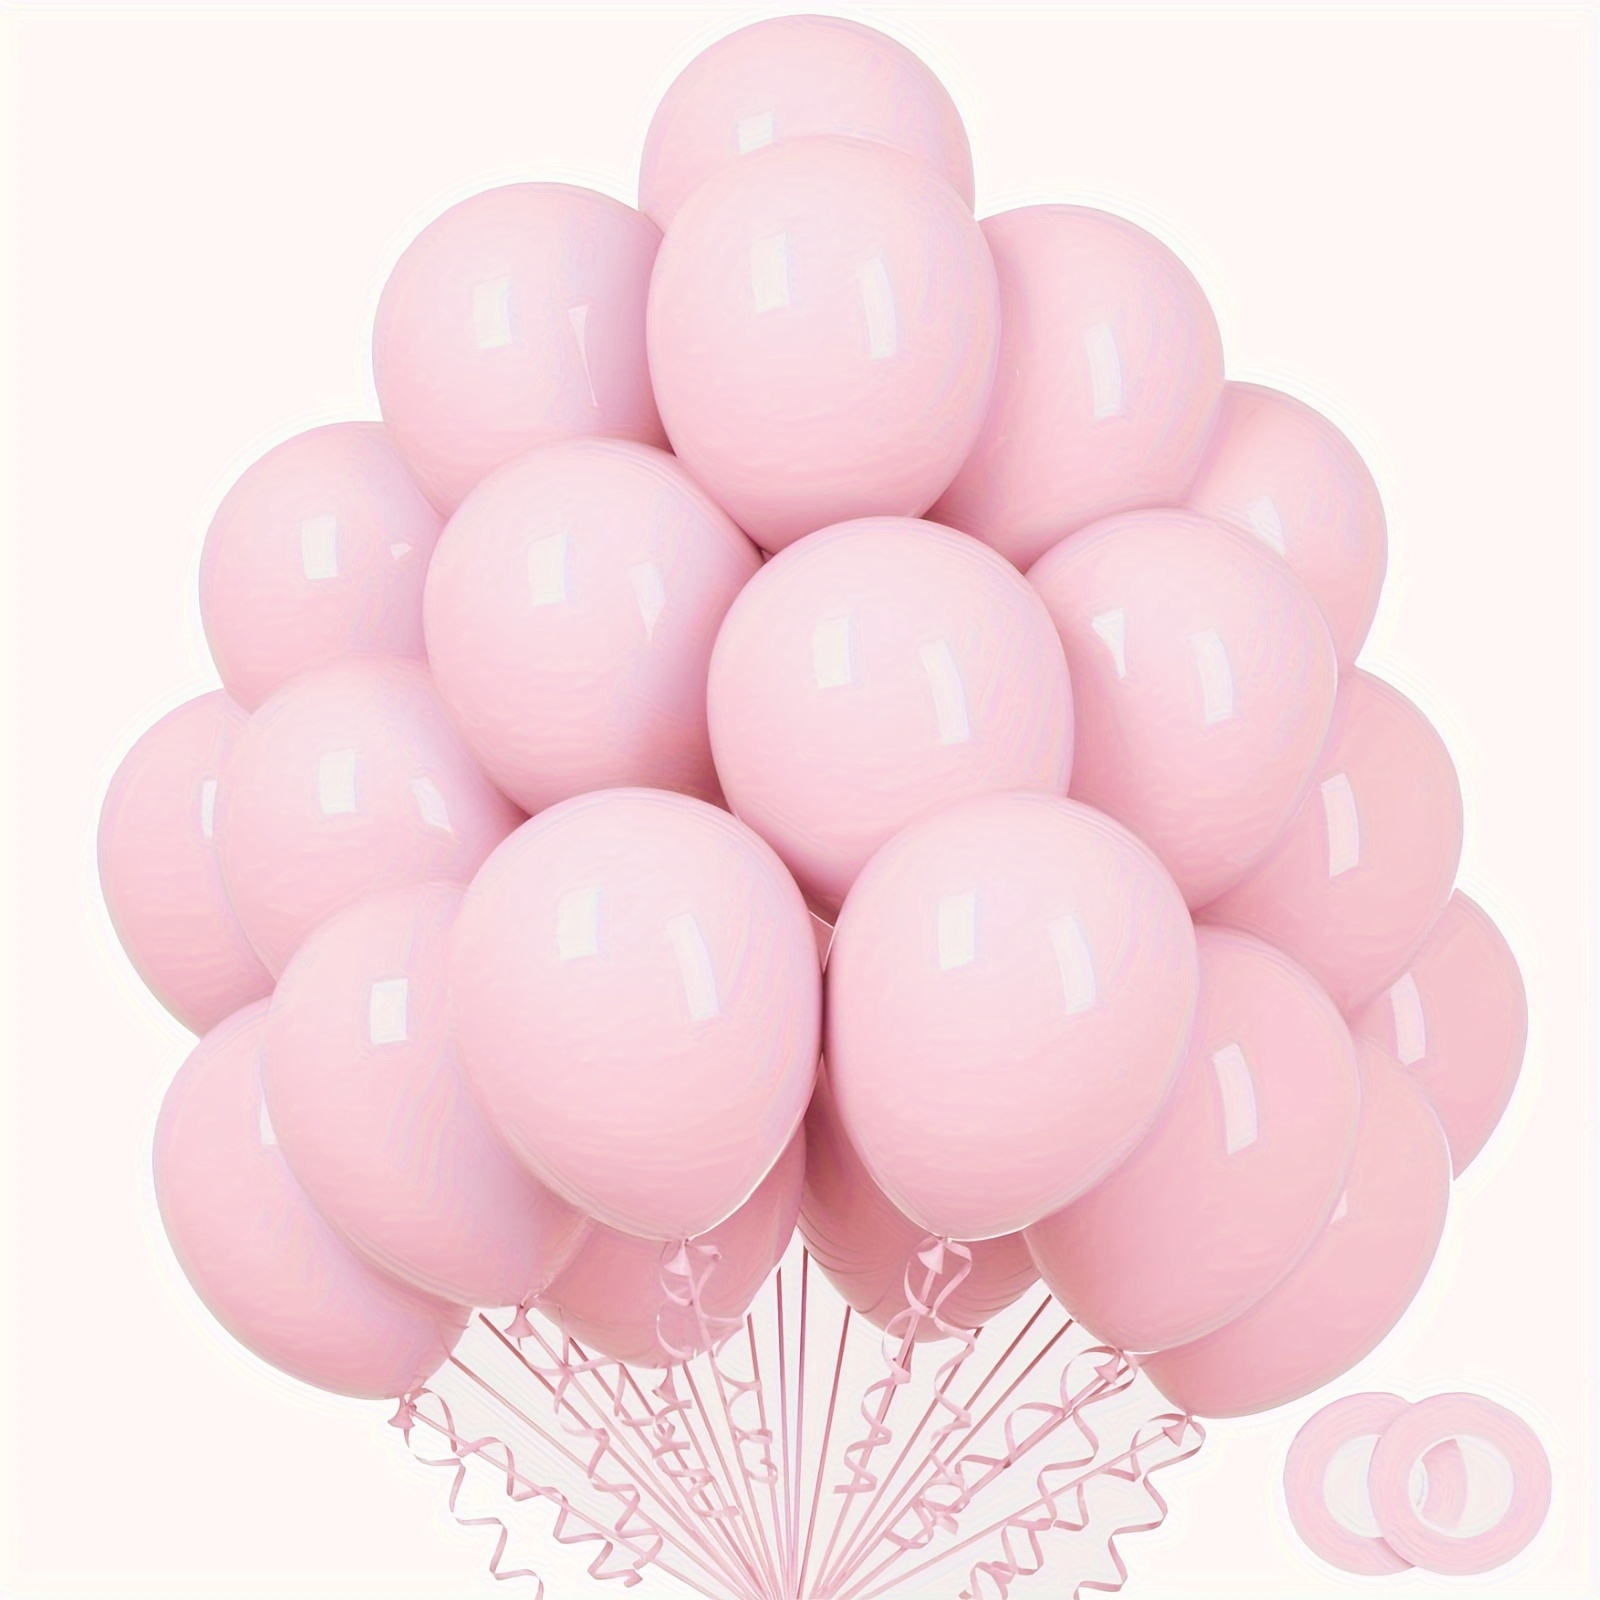 Globos azules y blancos, globos de confeti azul, globos blancos en total,  90 globos de látex para fiesta de despedida de soltera, boda, baby shower